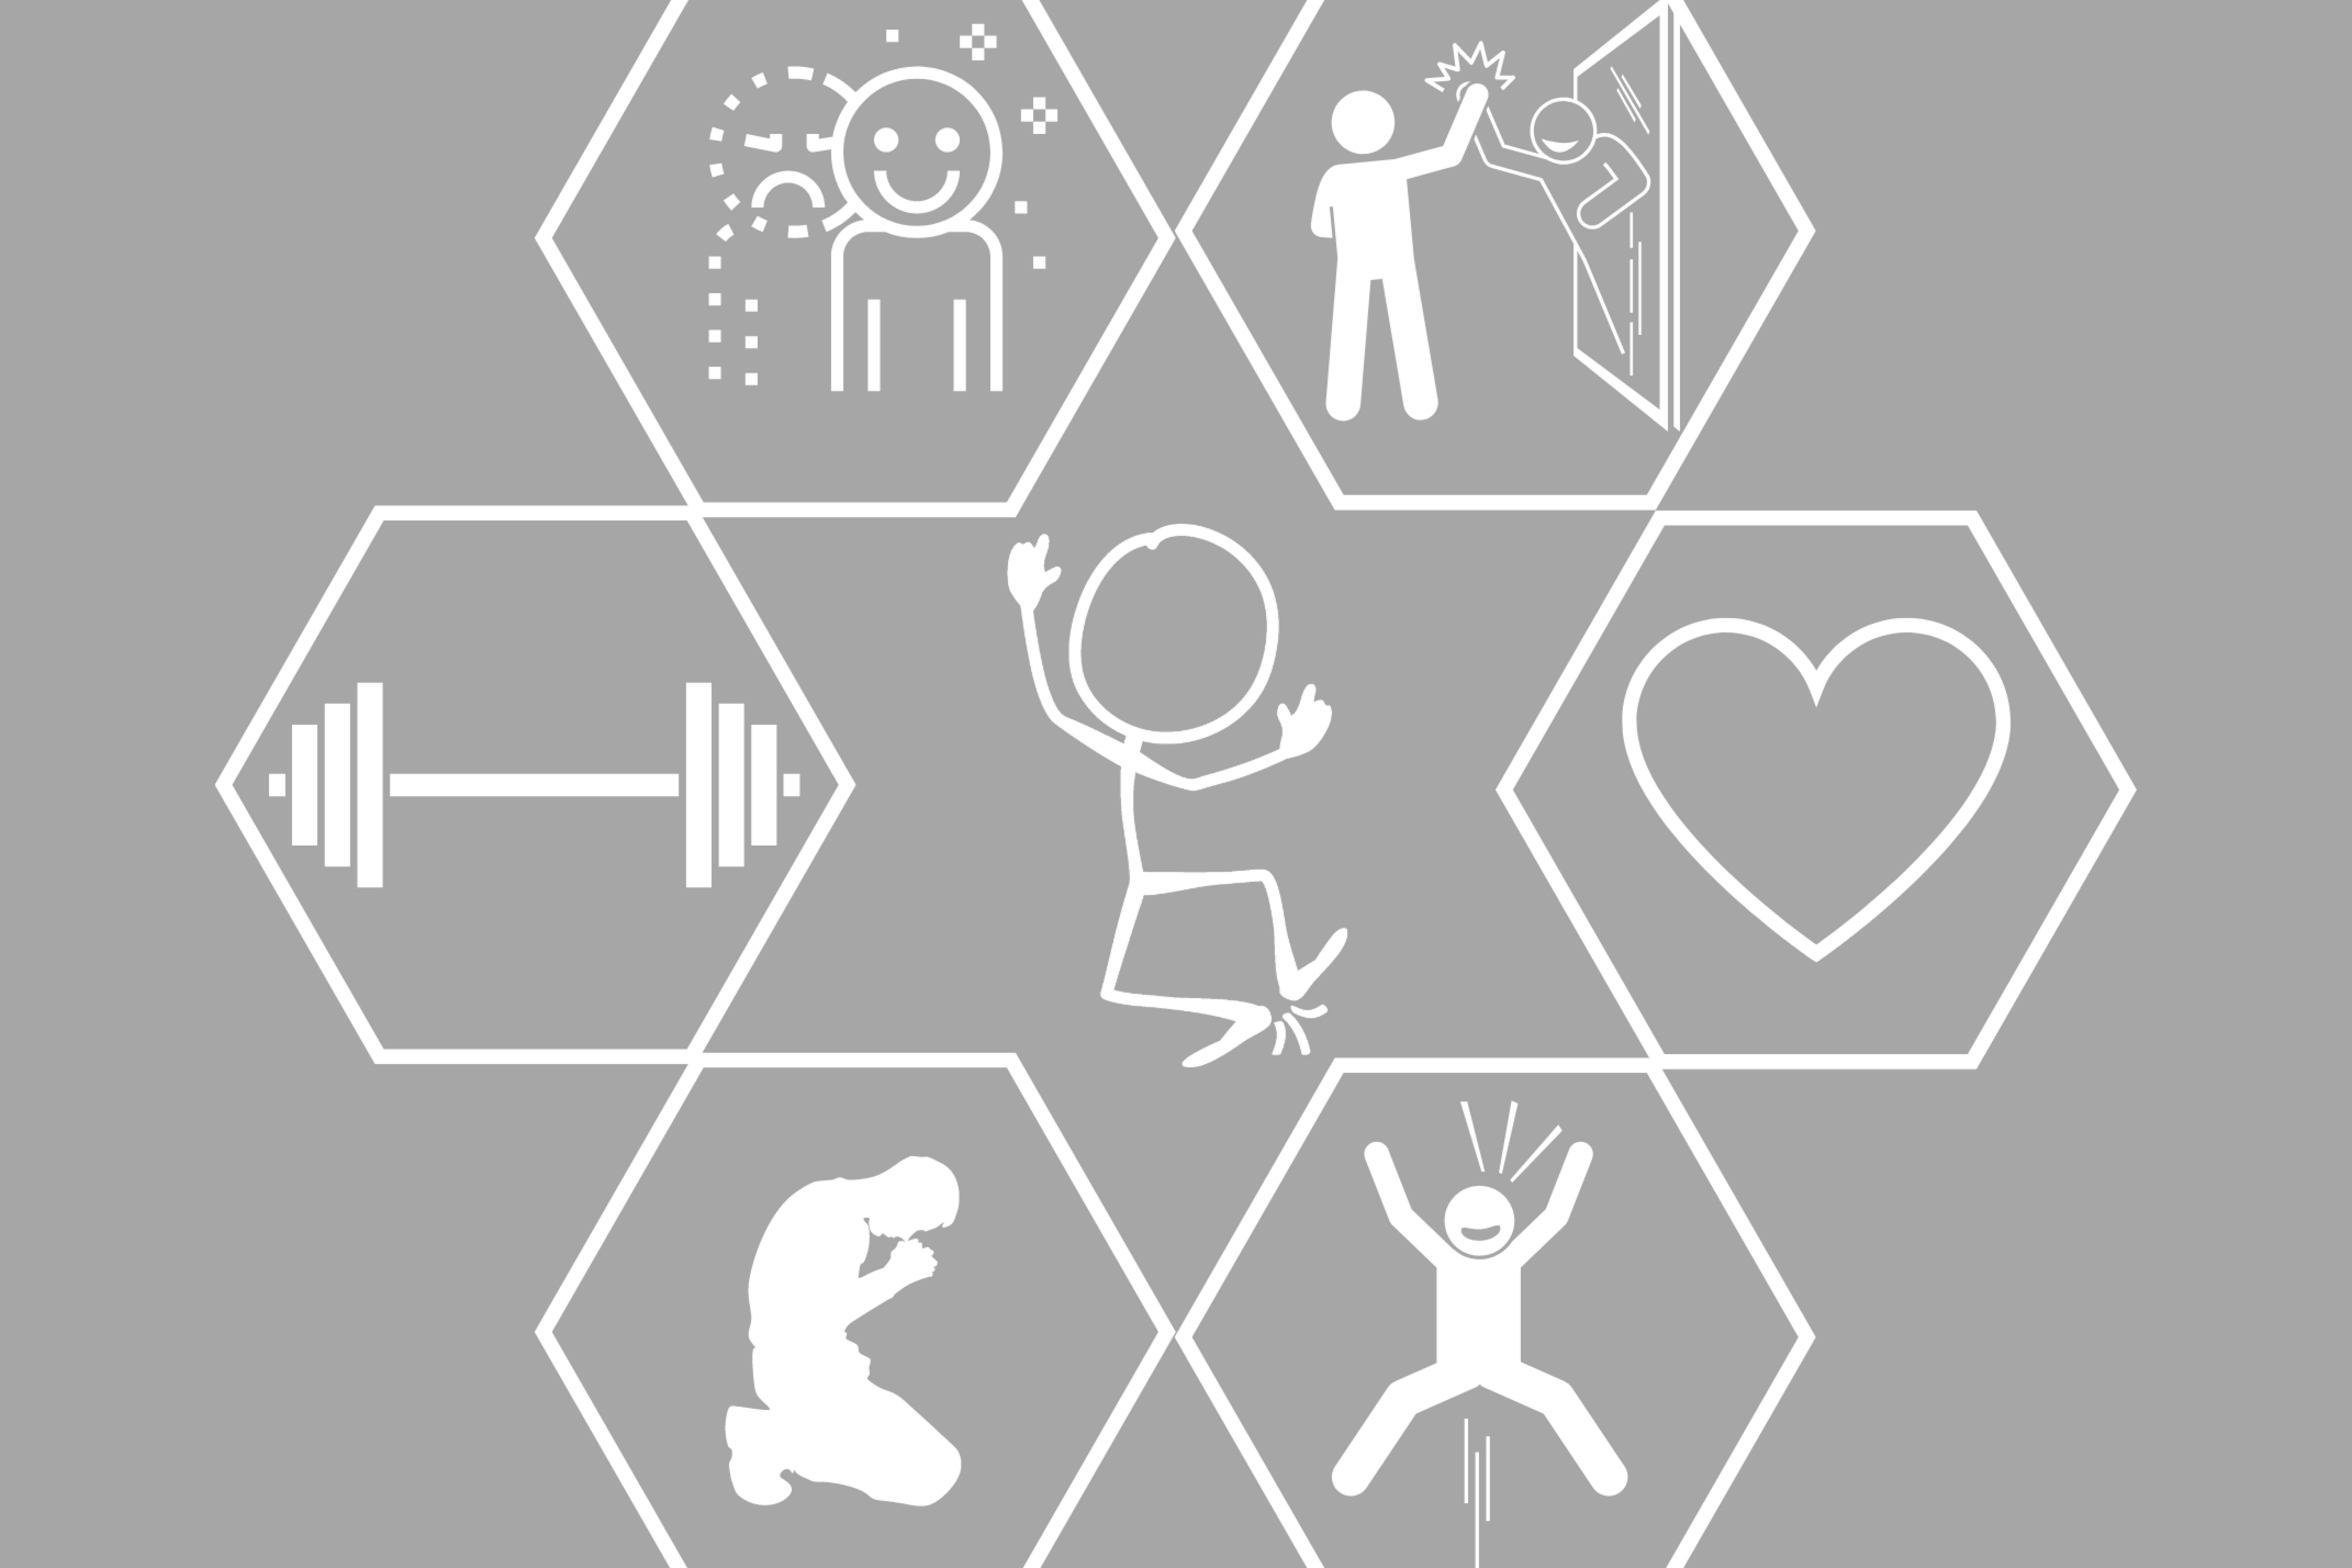 Bild mit sieben Waben, in der mittleren springt ein Zeichenmensch nach oben, in den restlichen sind Icons von positiven Aspekten